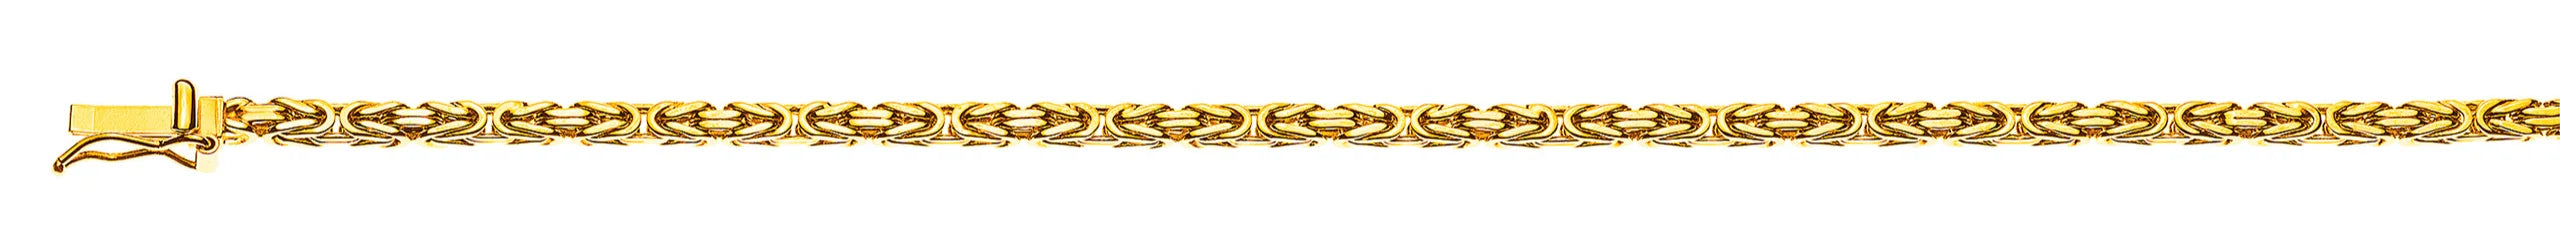 Collier Königskette klassisch Gelbgold 750 ca. 2.5 mm x 50cm